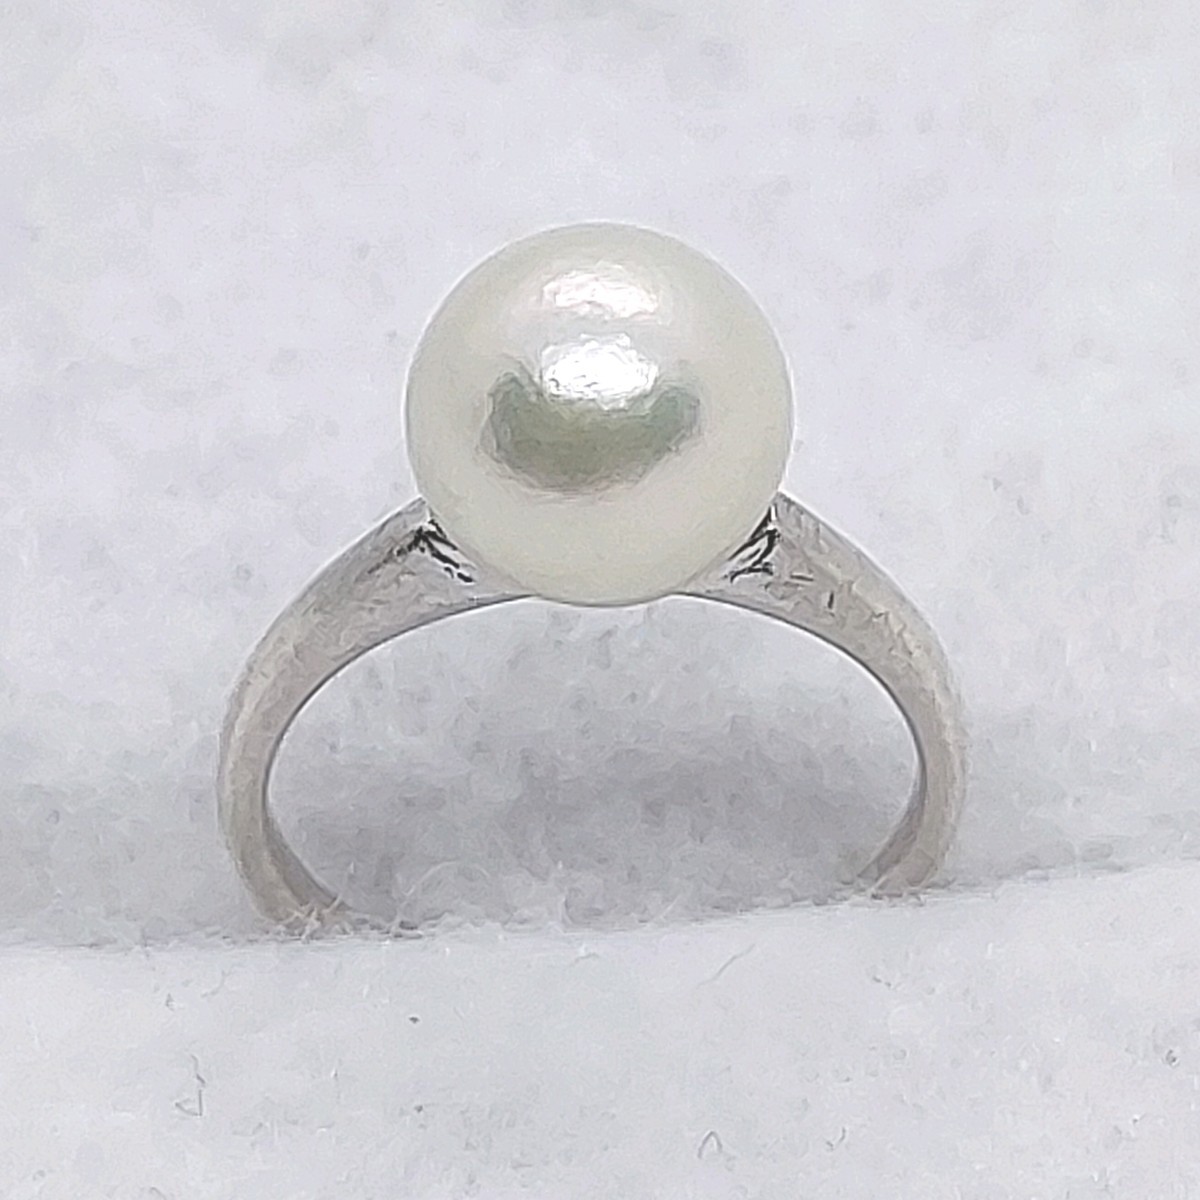  Mikimoto MIKIMOTO жемчуг примерно 7.3. примерно 1.5 номер серебряный булавка кольцо для ключей кольцо SV серебряный 